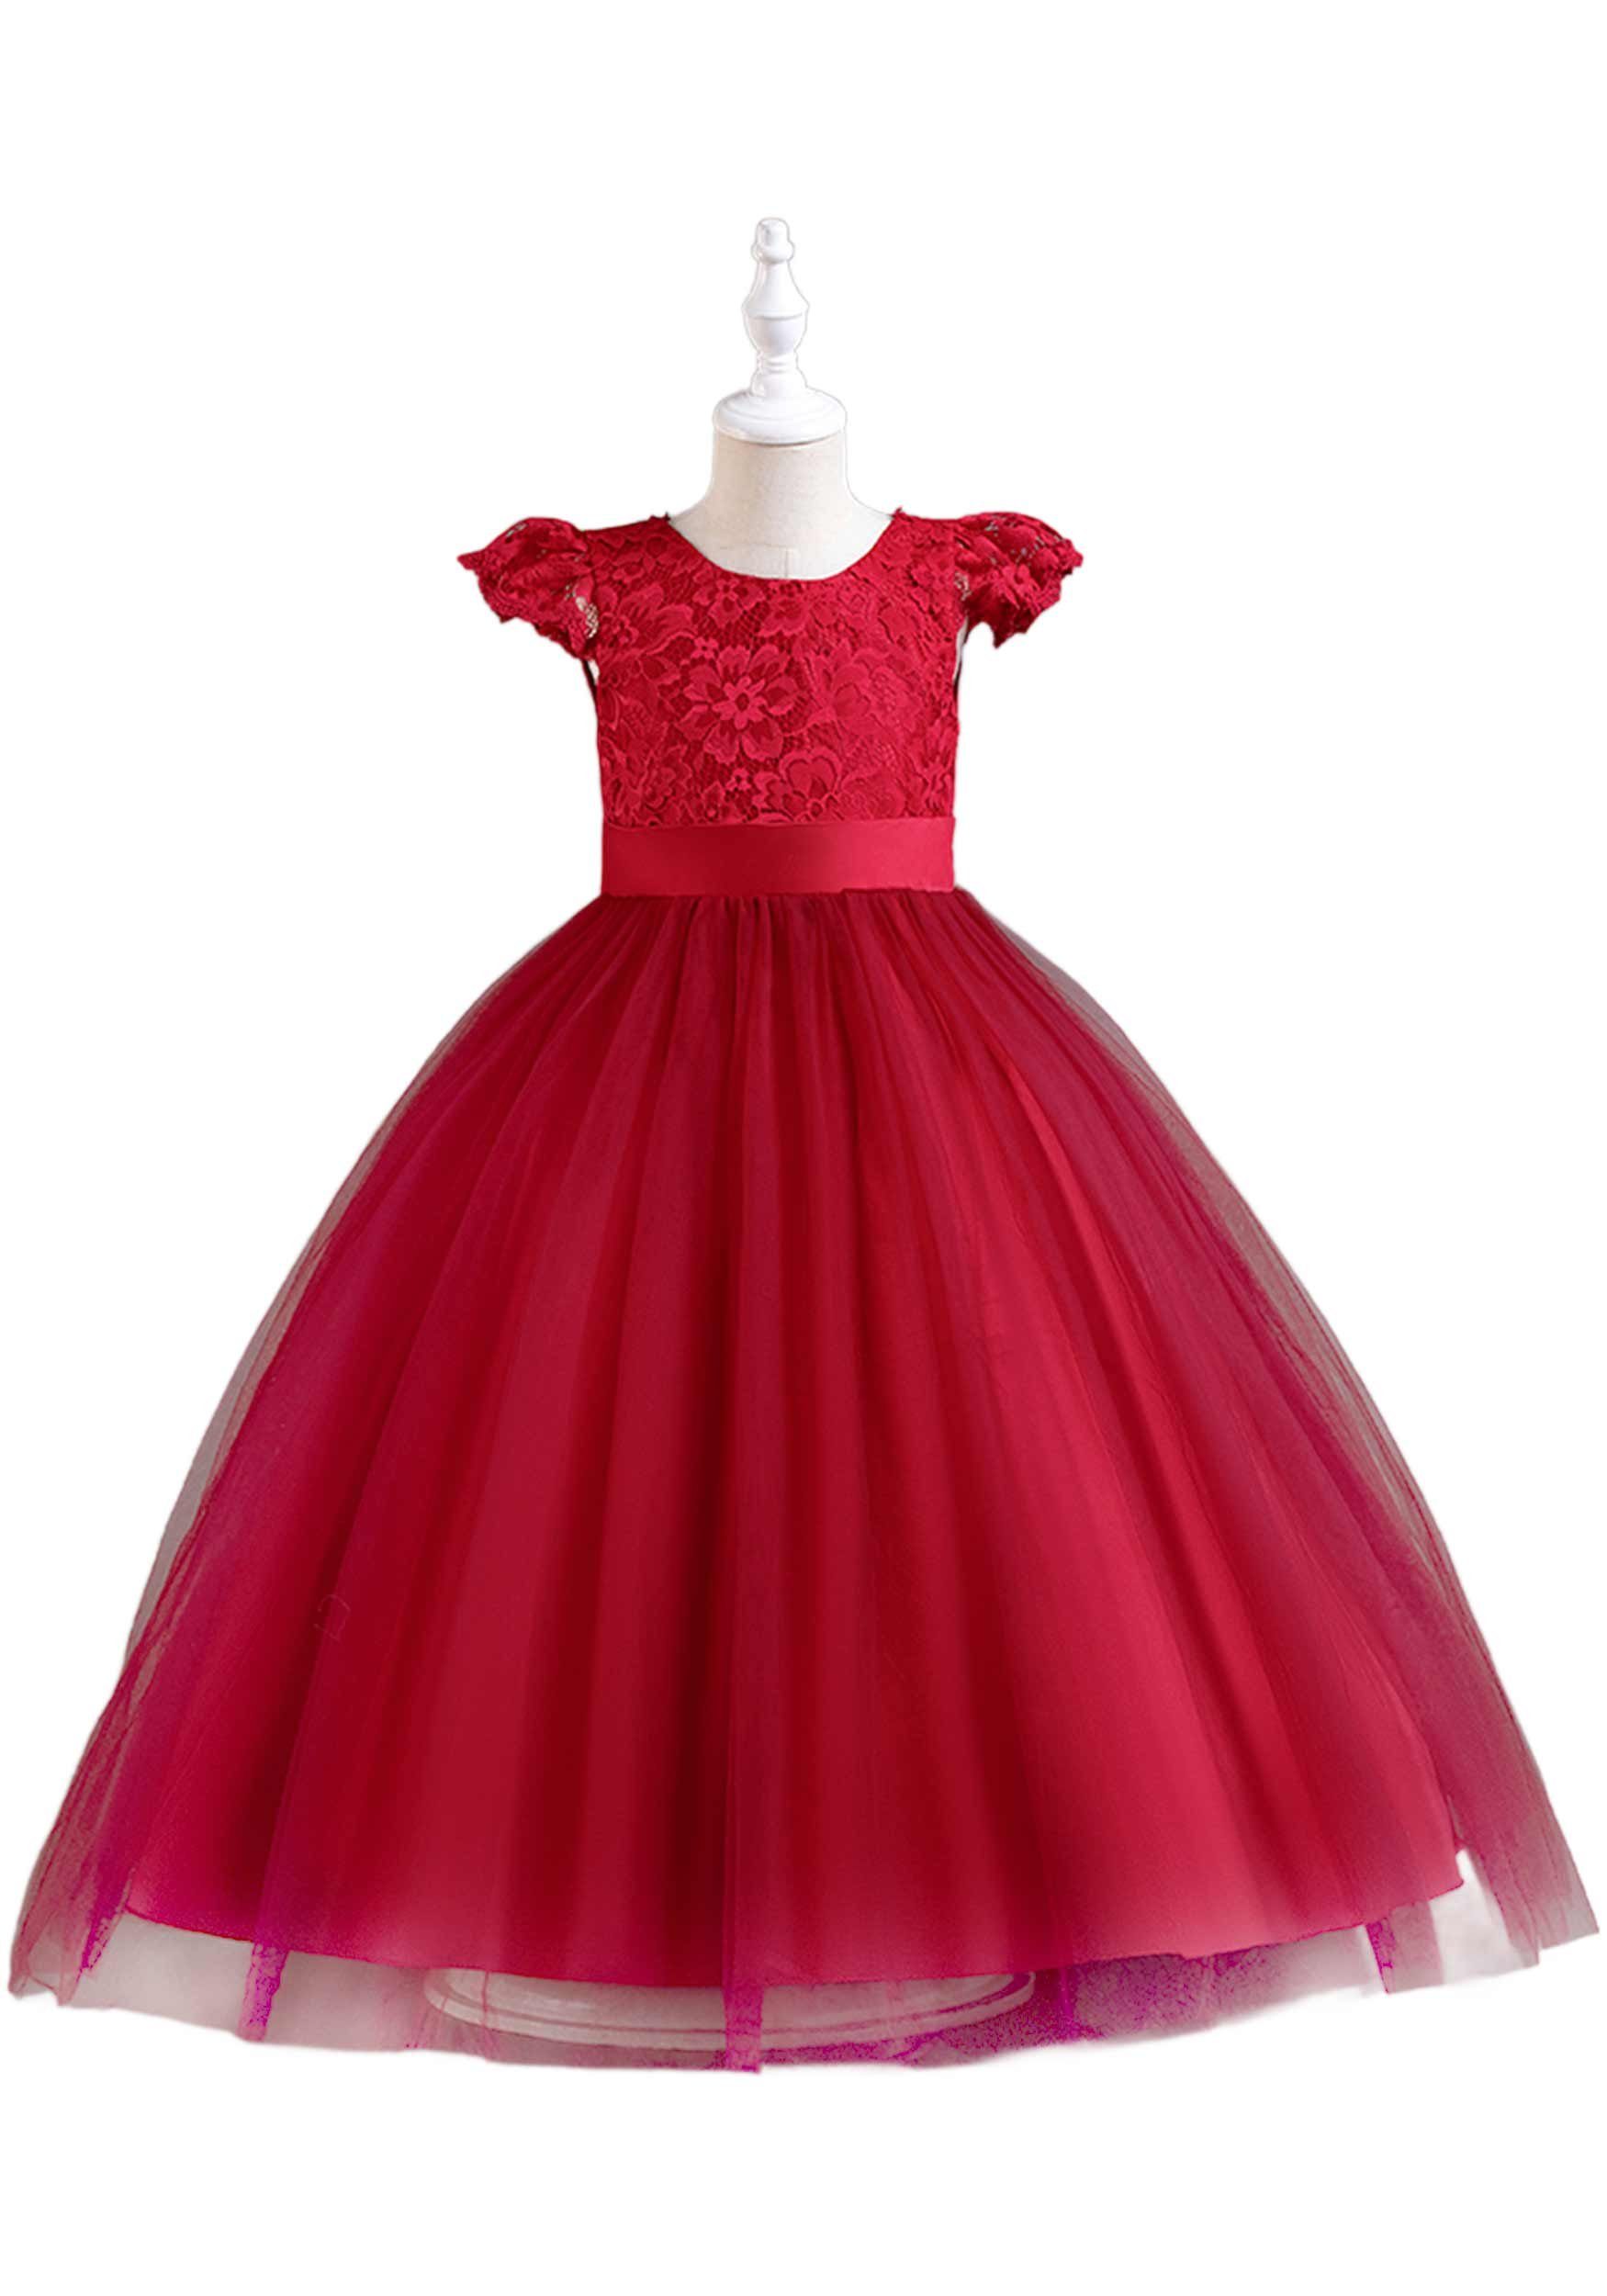 Daisred Abendkleid Prinzessinnenkleid Tüllkleider Kinderkleider Rot Blumenmädchen